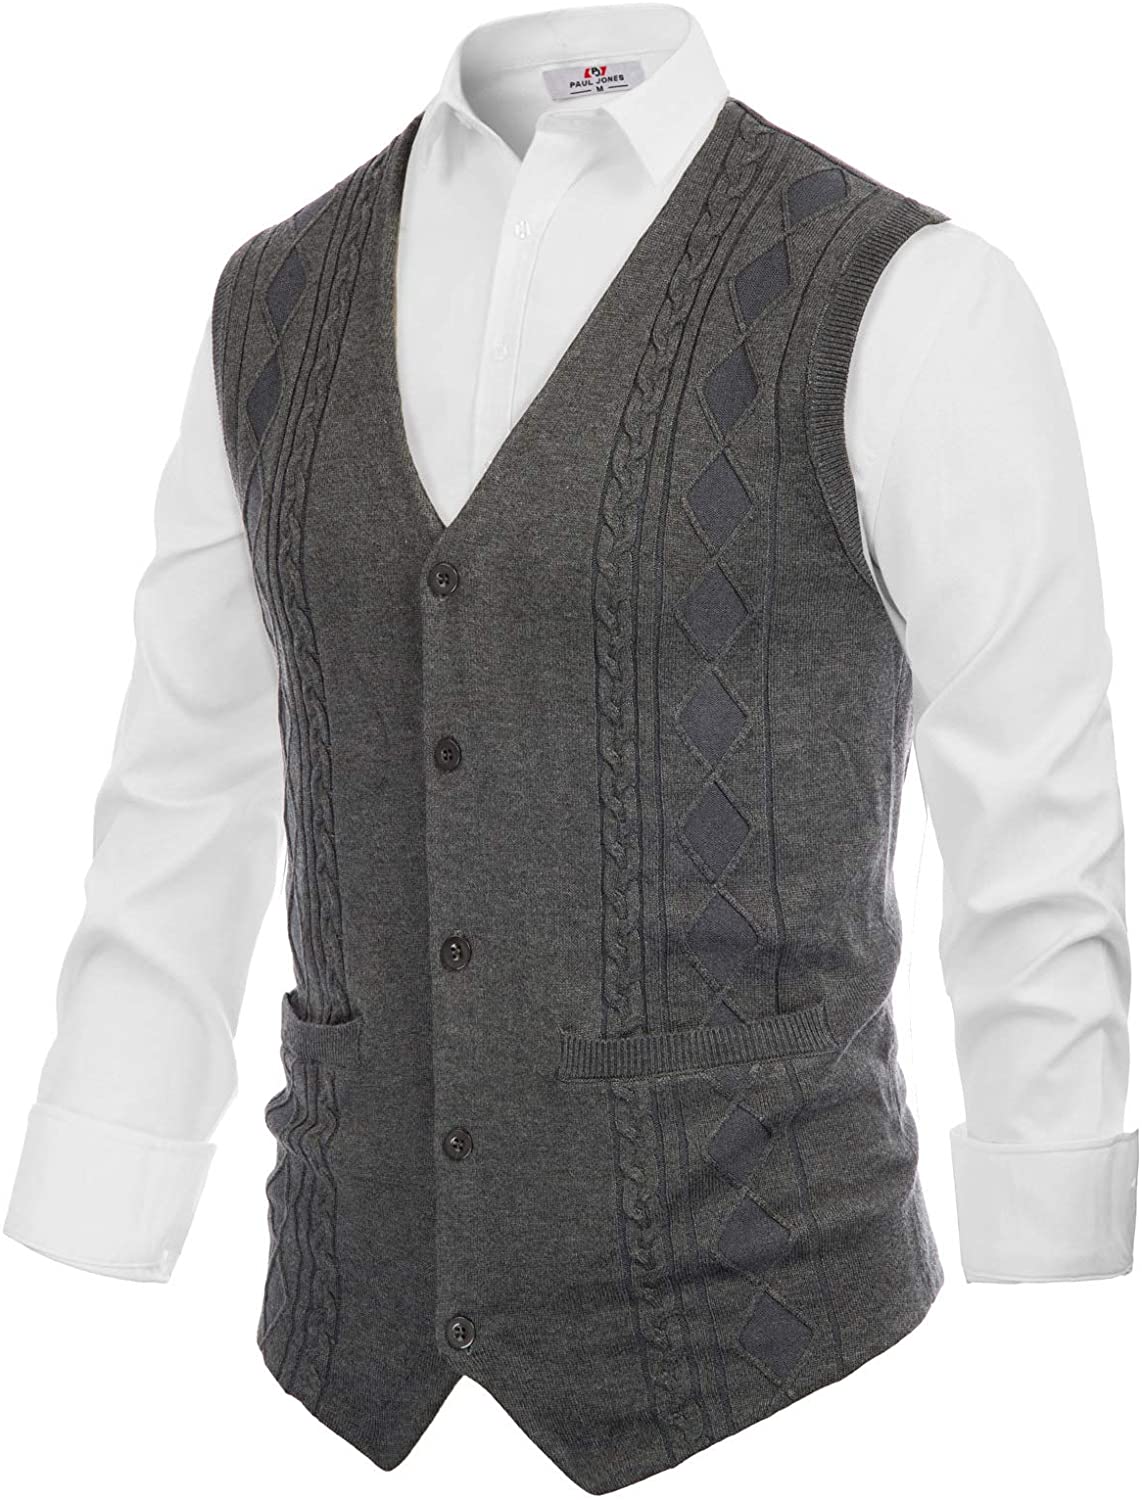 PJ PAUL JONES Mens Cable Knit Sweater Vest Button Front V Neck Sweater ...